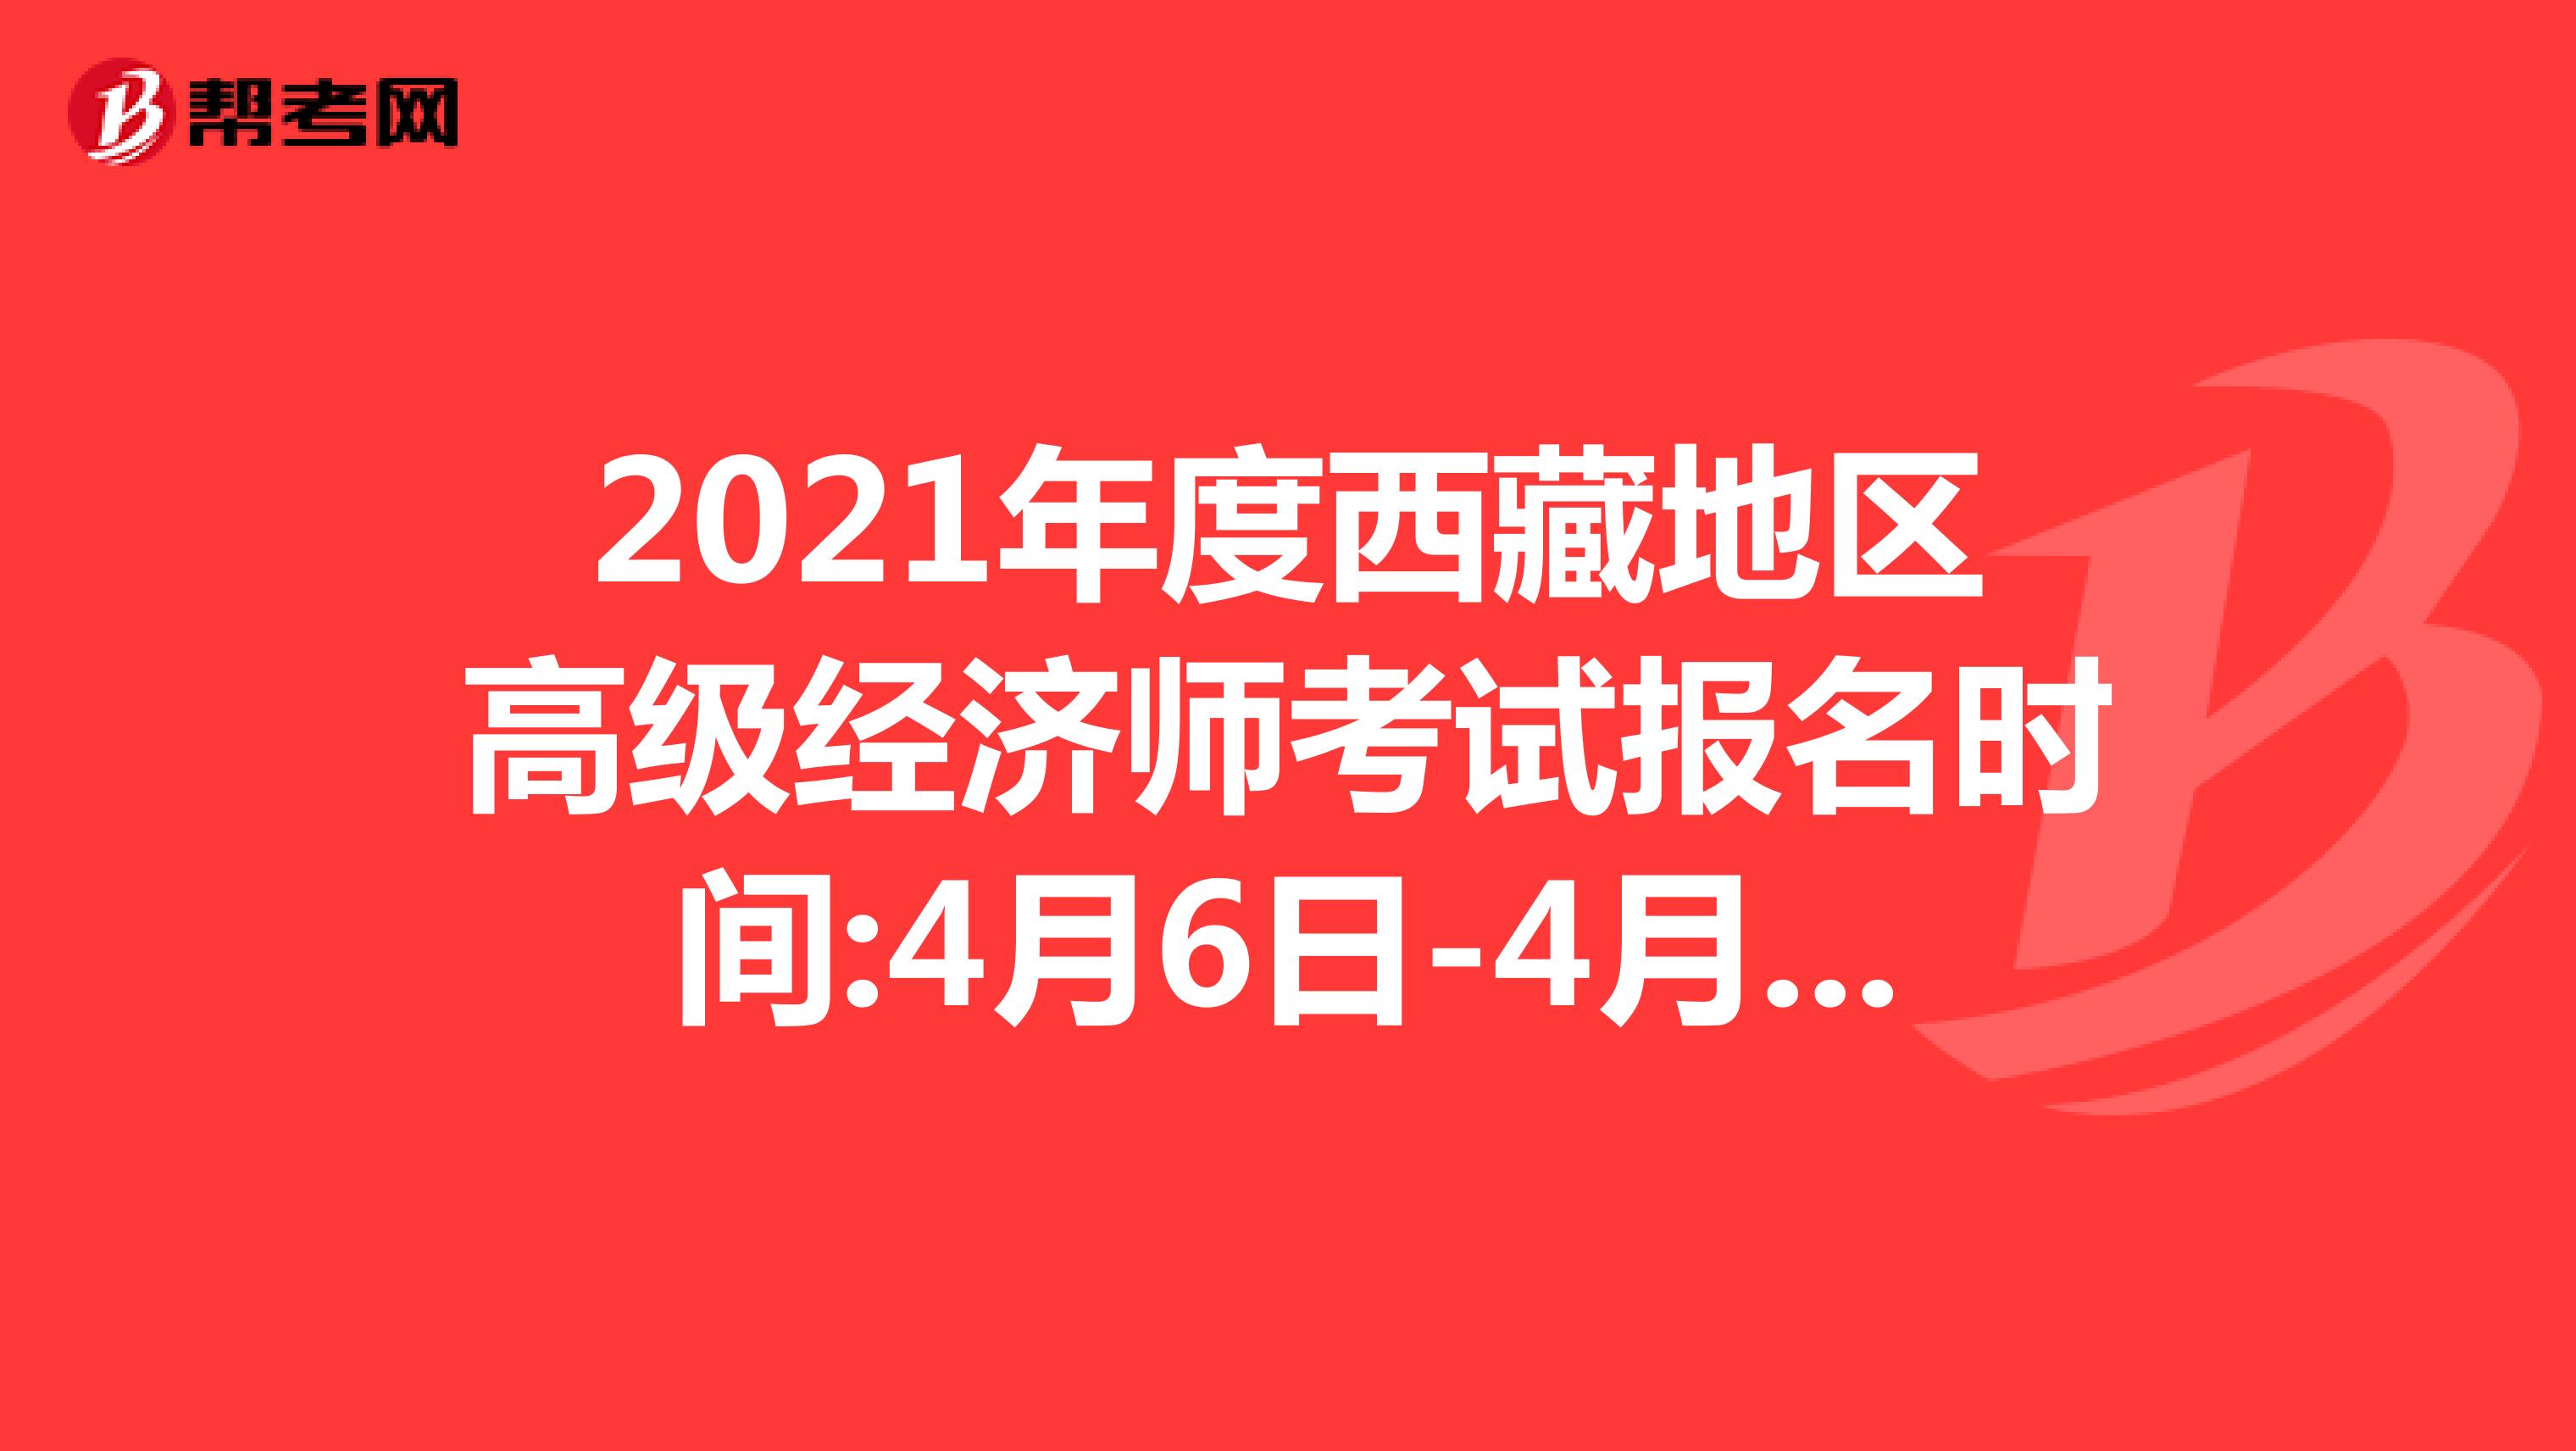 2021年度西藏地区高级经济师考试报名时间:4月6日-4月18日